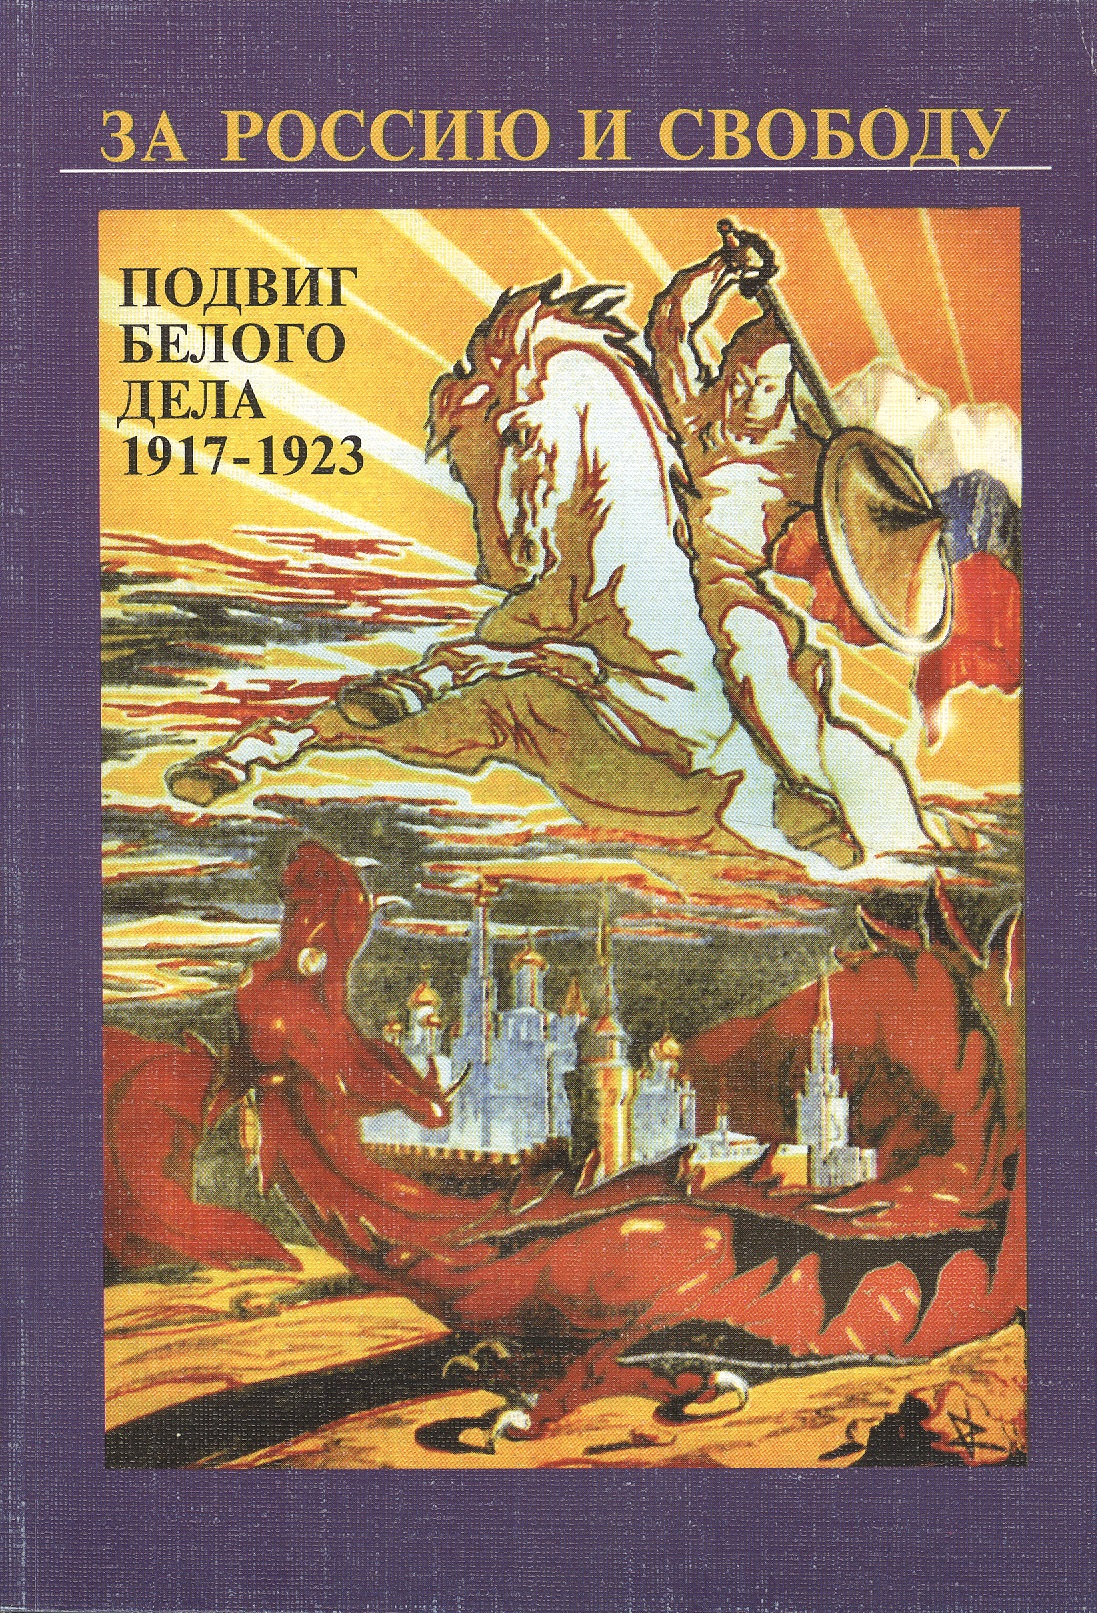 Зубова И. А. За Россию и свободу. Подвиг белого дела 1917-1923 гг.